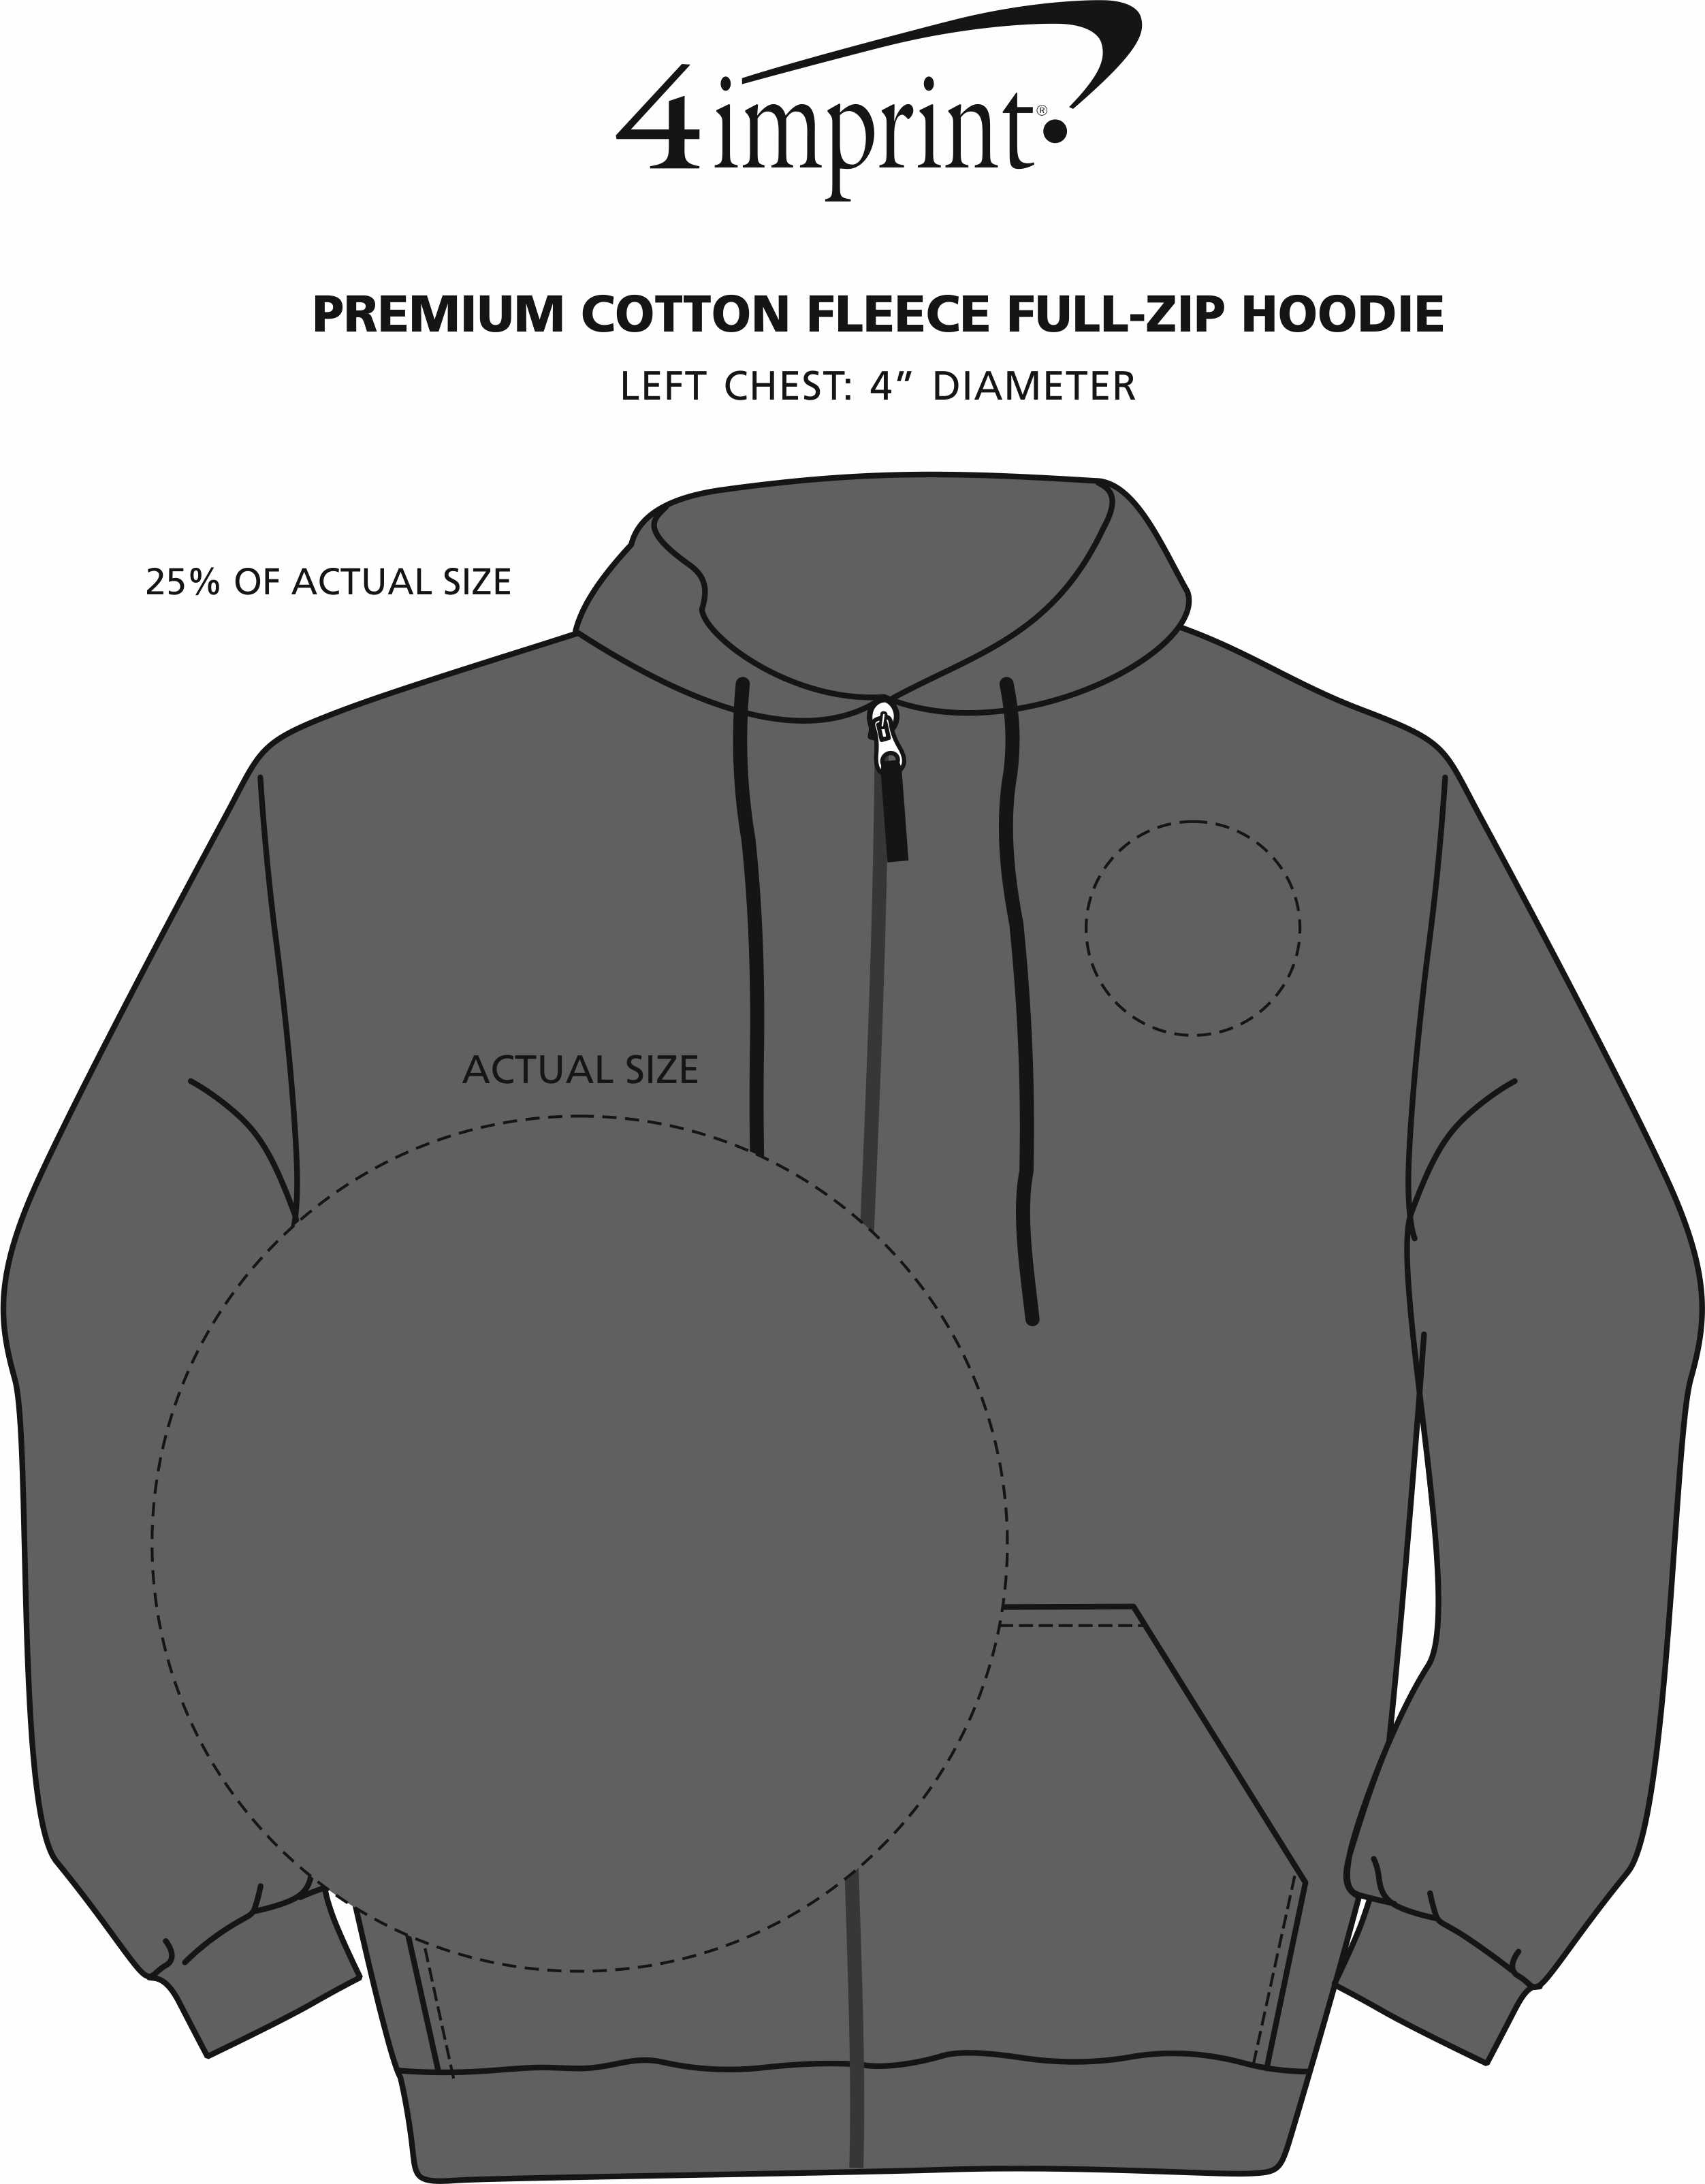 Imprint Area of Premium Cotton Fleece Full-Zip Hoodie